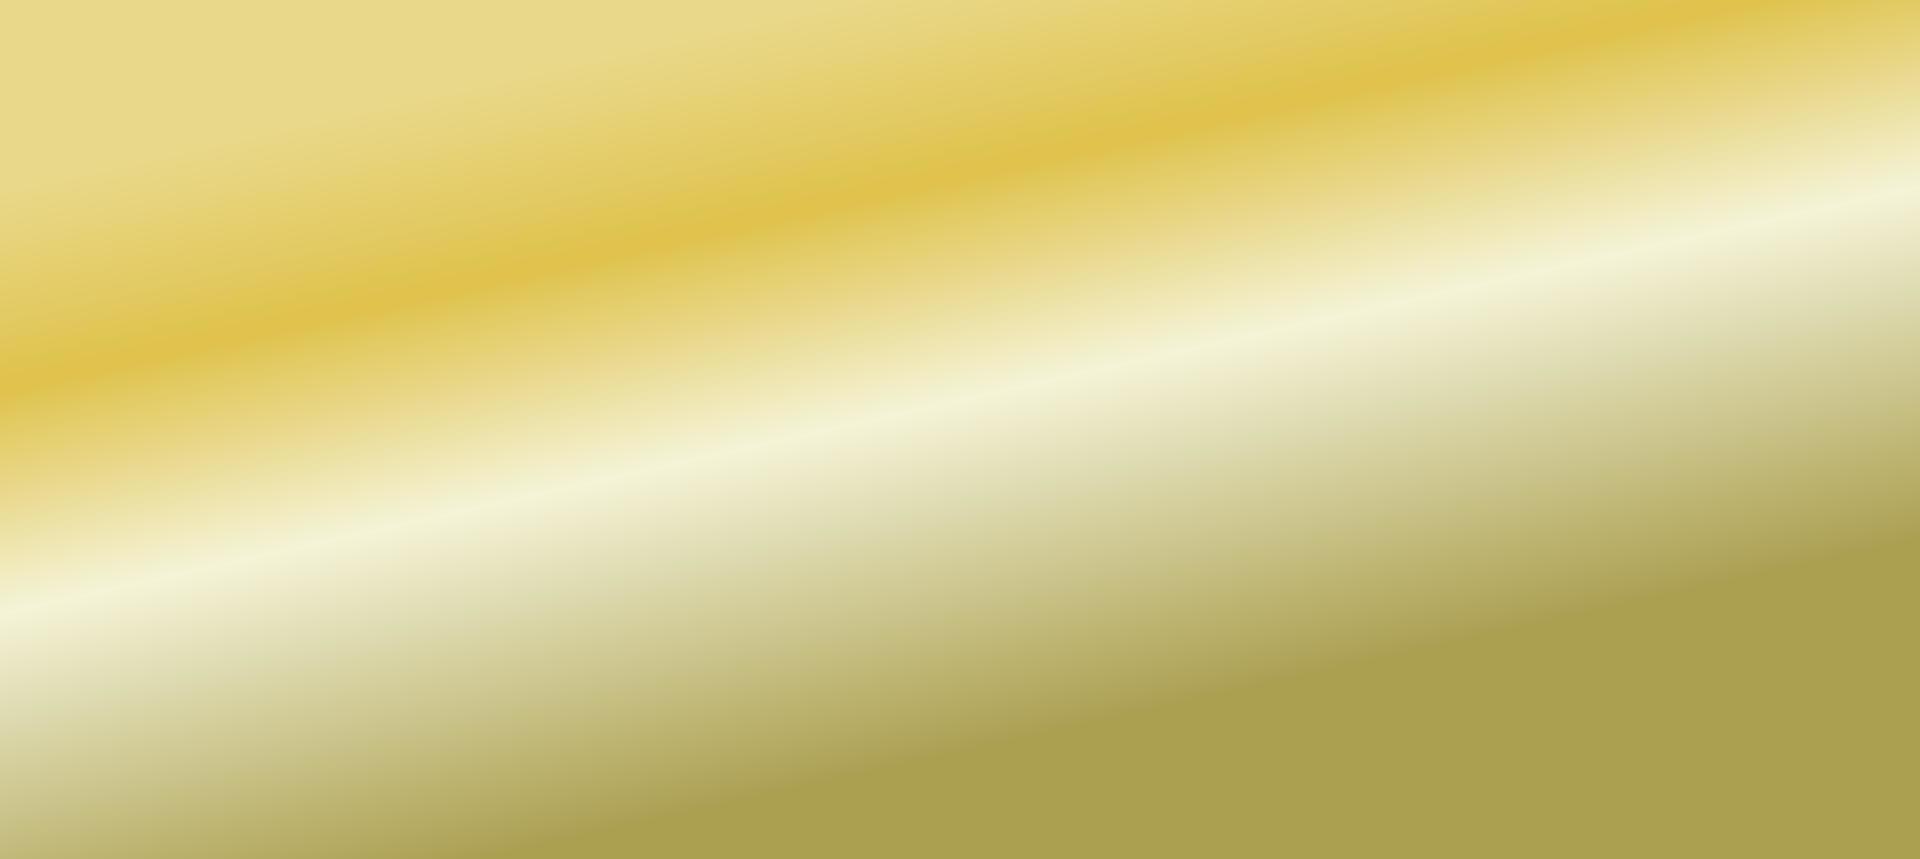 diseño de patrón dorado 92 prendas de vestir ropa deportiva sublimación papel tapiz fondo vector